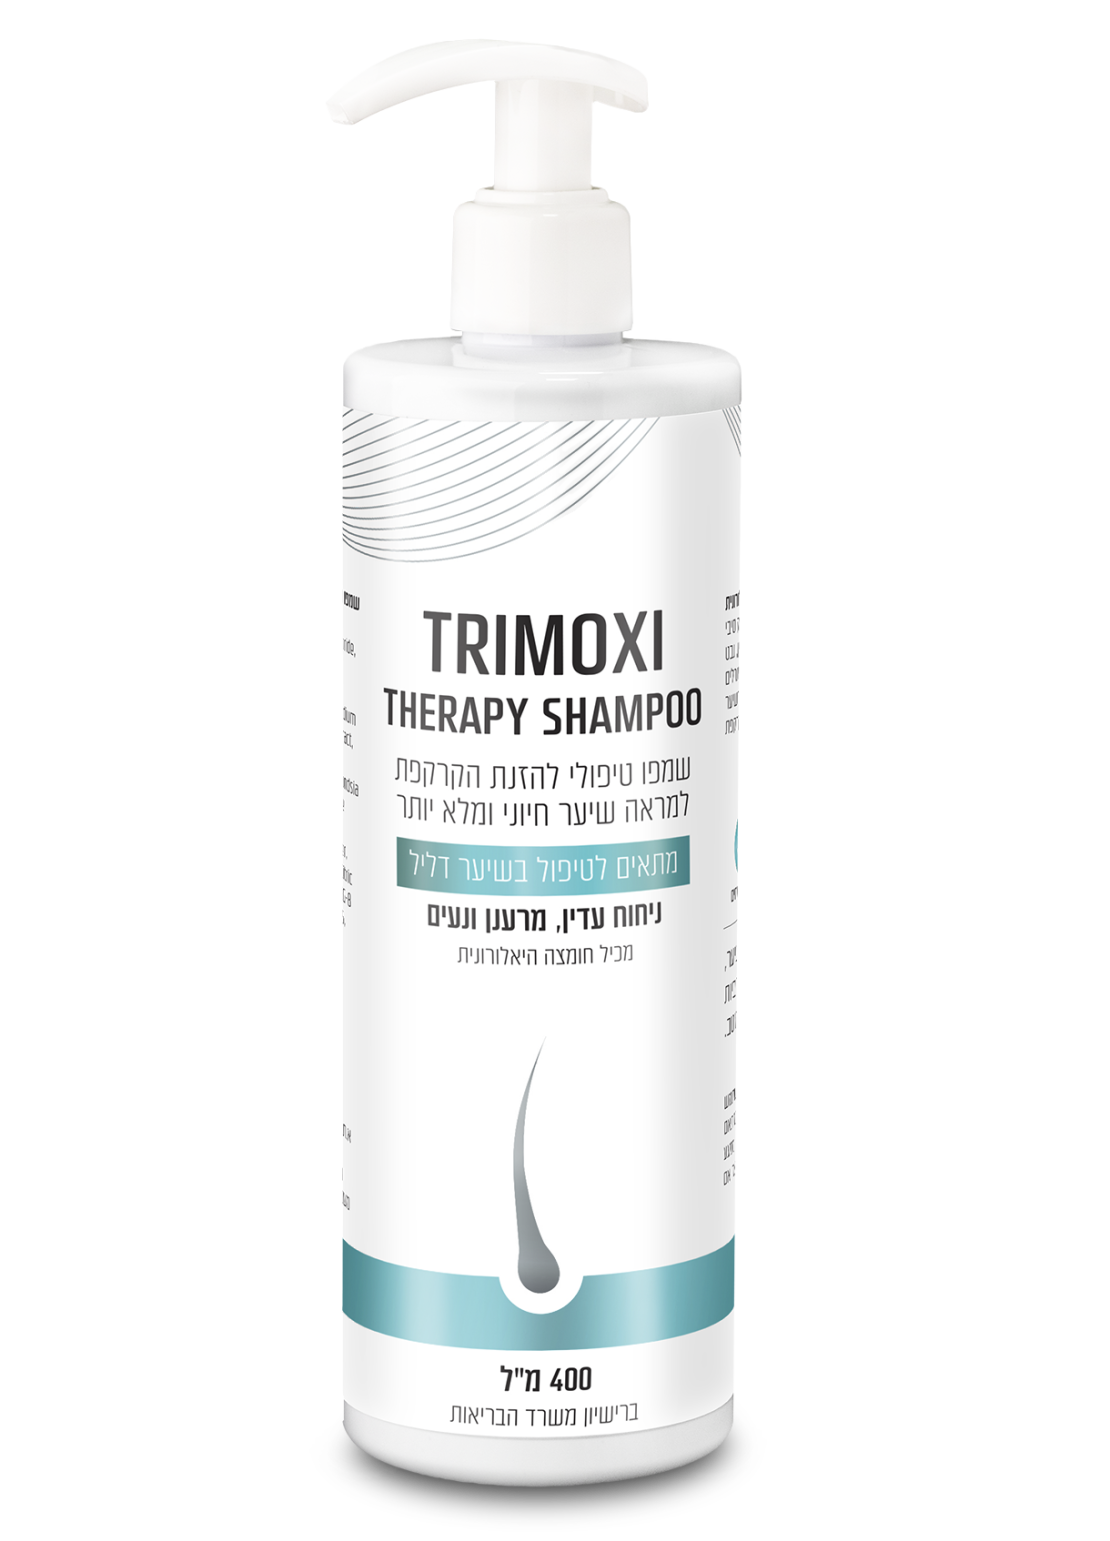 TRIMOXI Therapy Shampoo- שמפו תרימוקסי תרפי